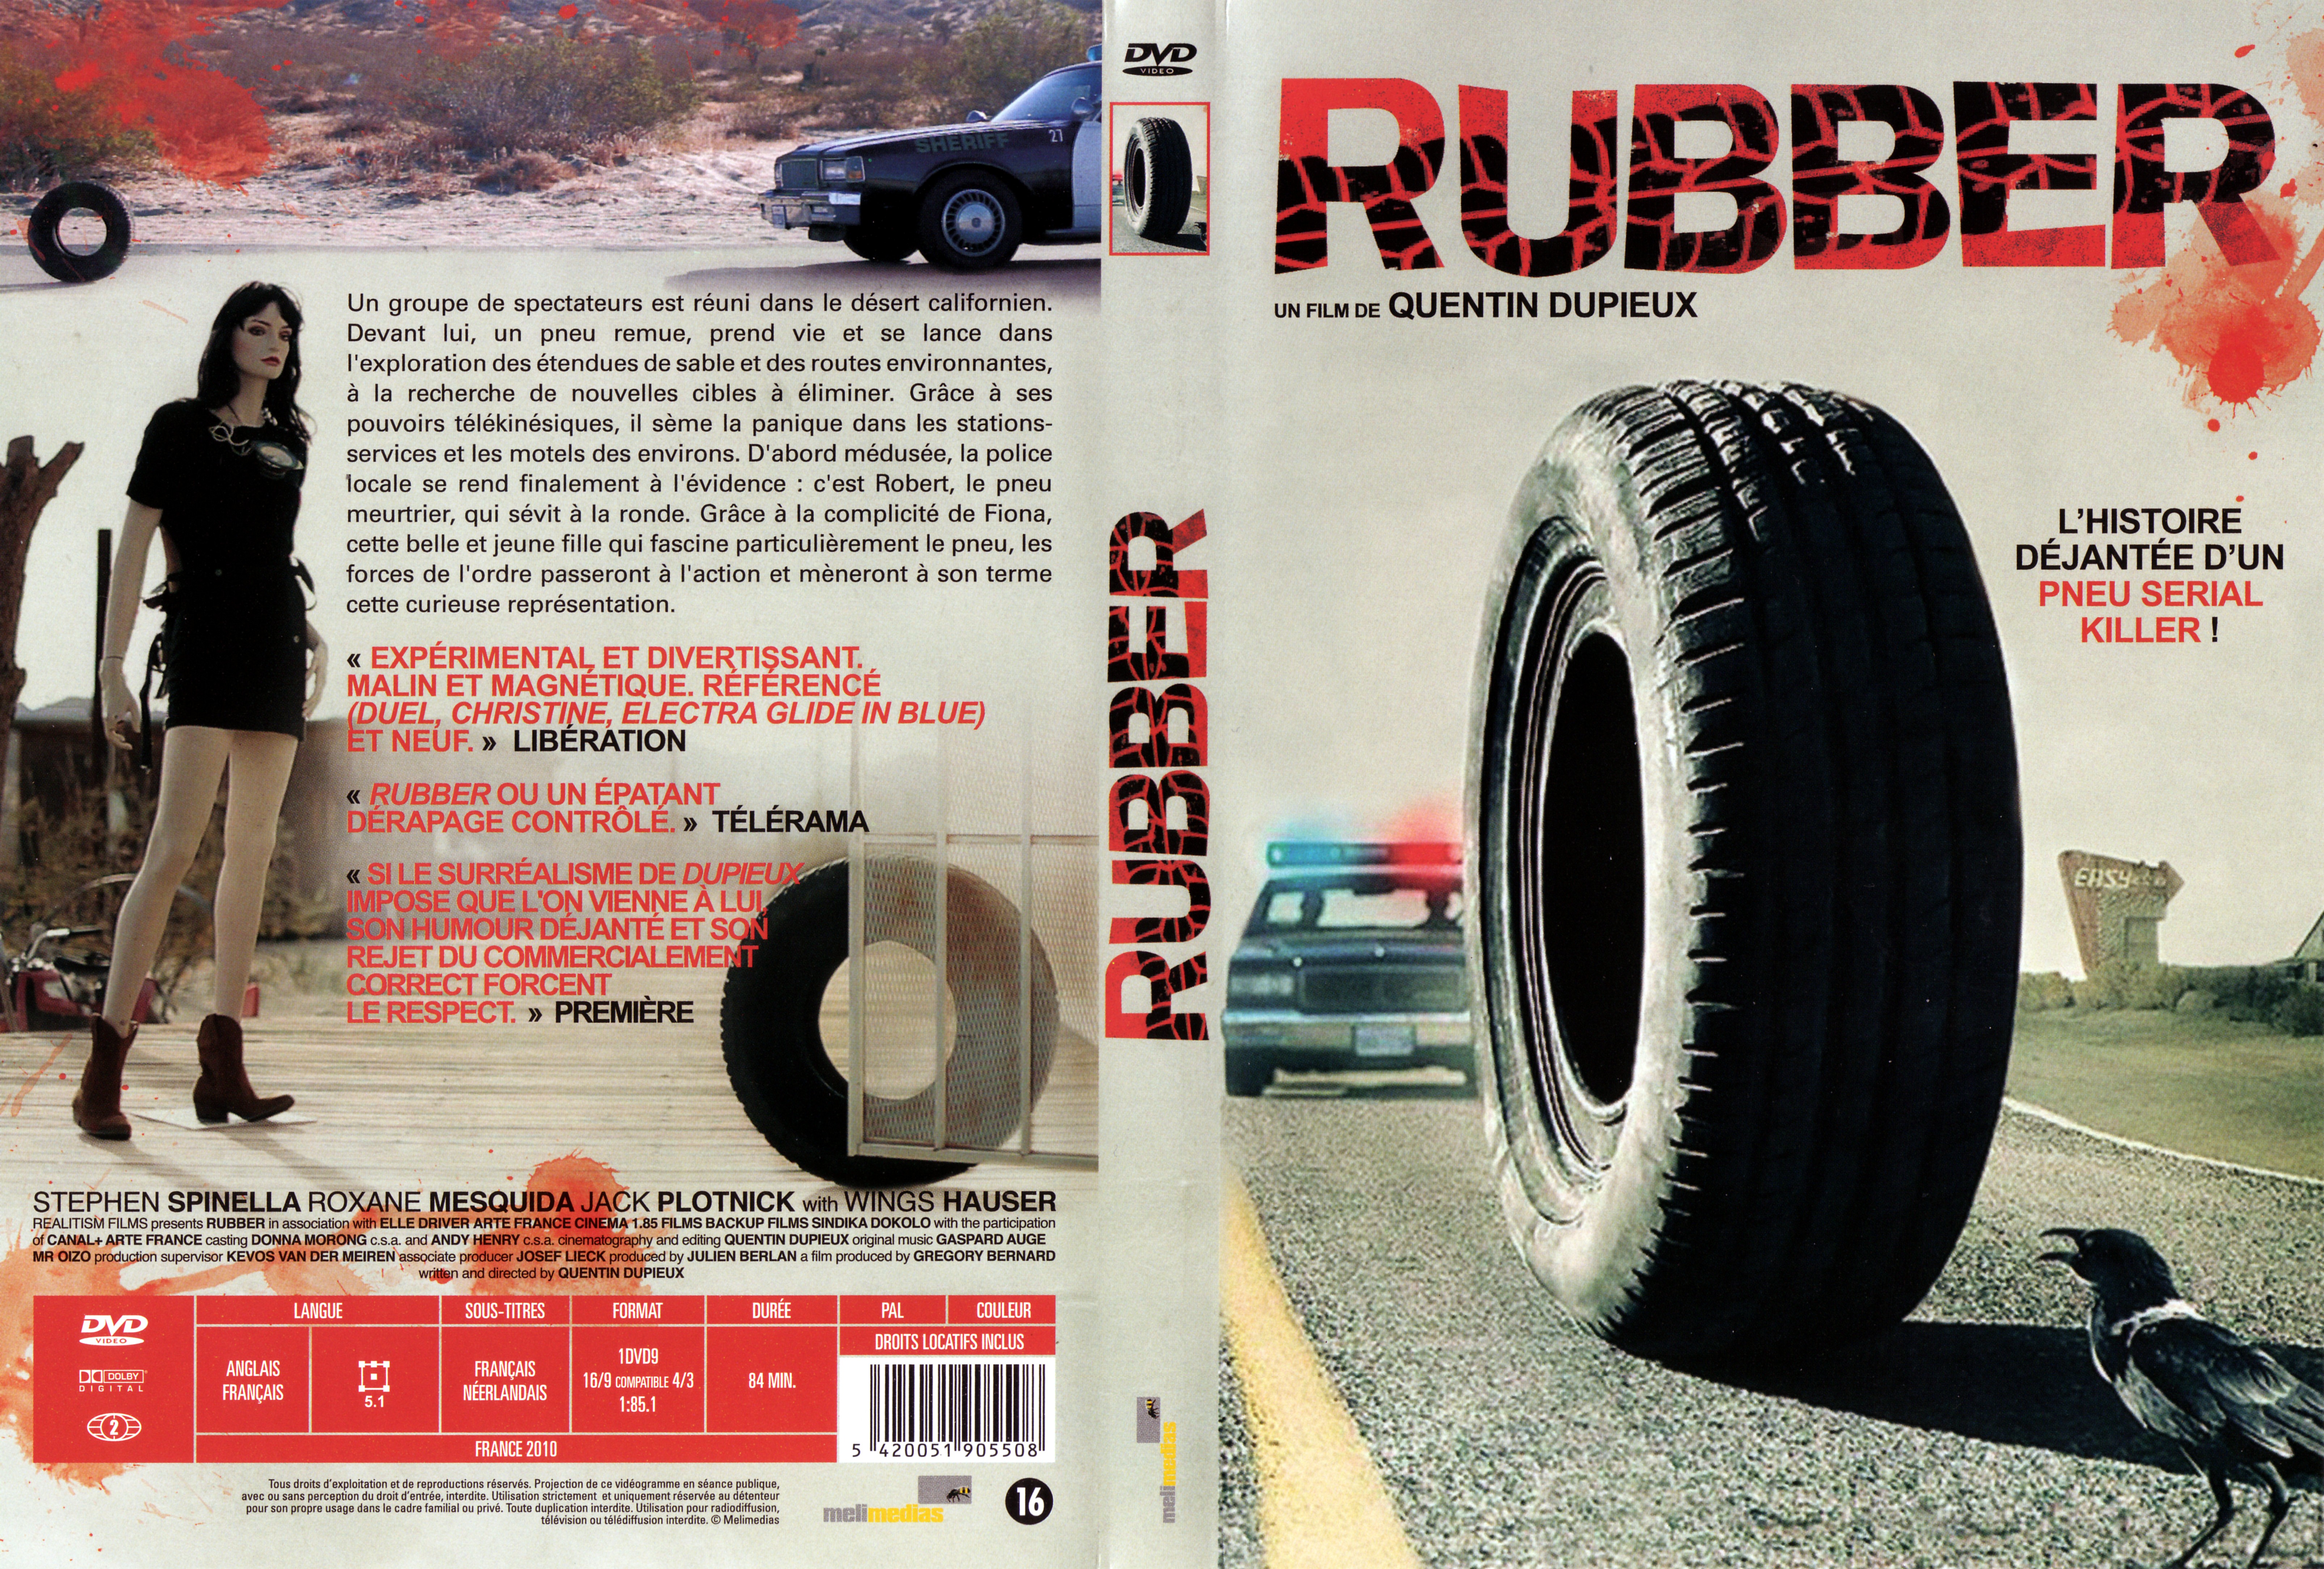 Jaquette DVD Rubber v2